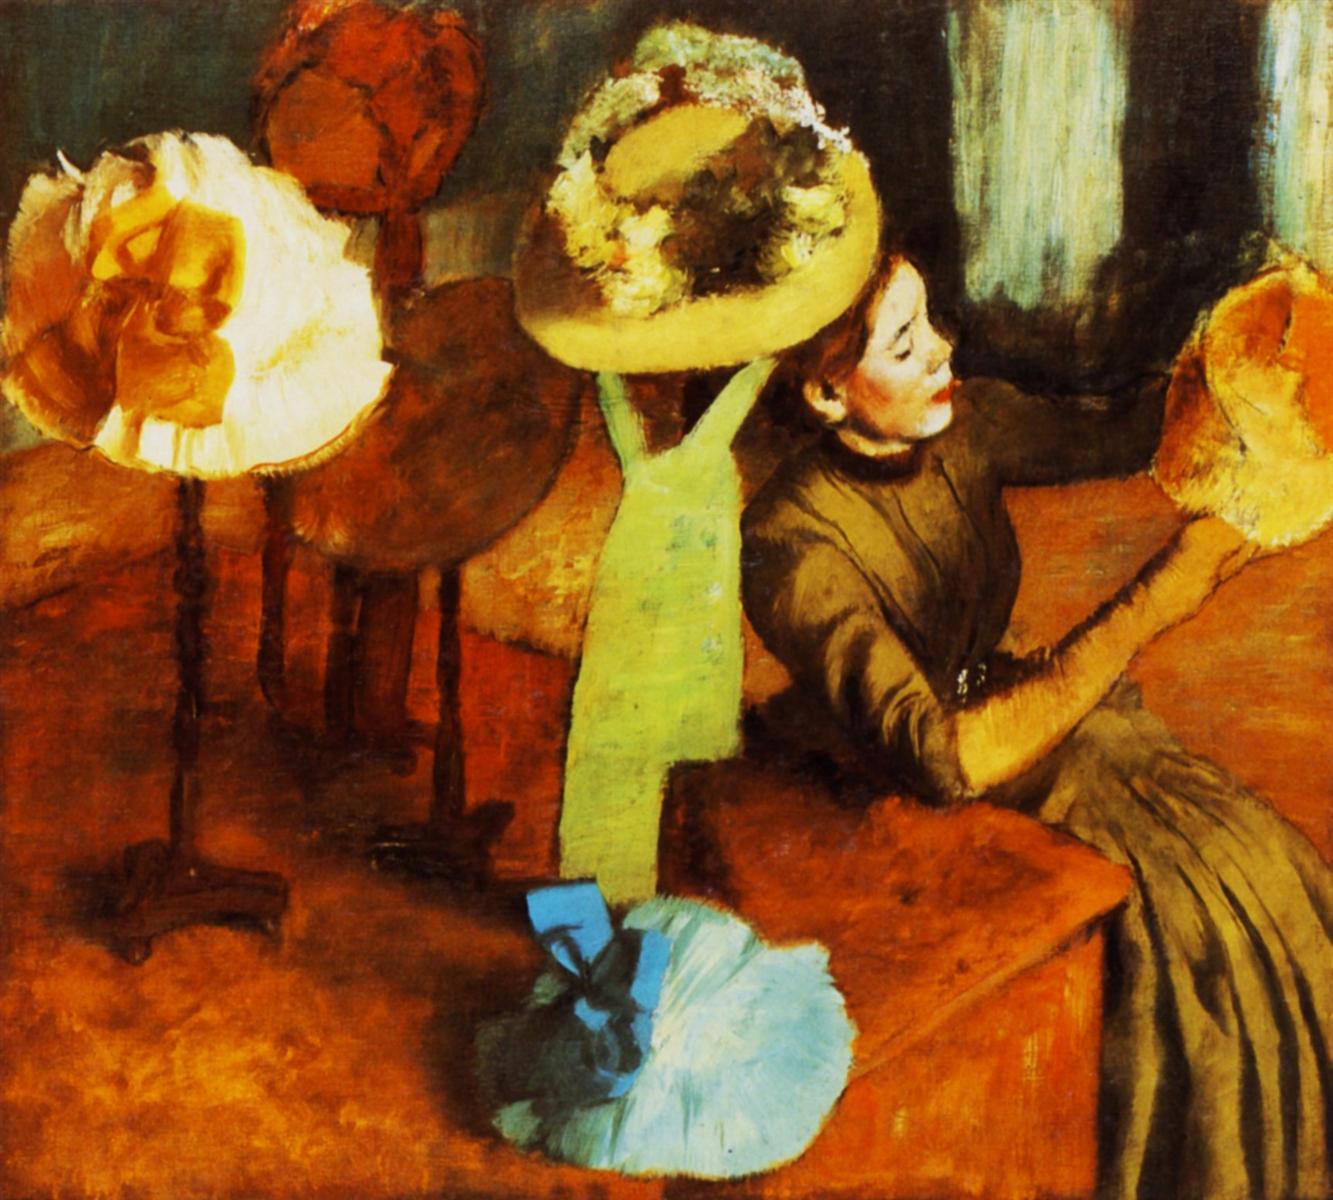 Edgar+Degas-1834-1917 (705).jpg